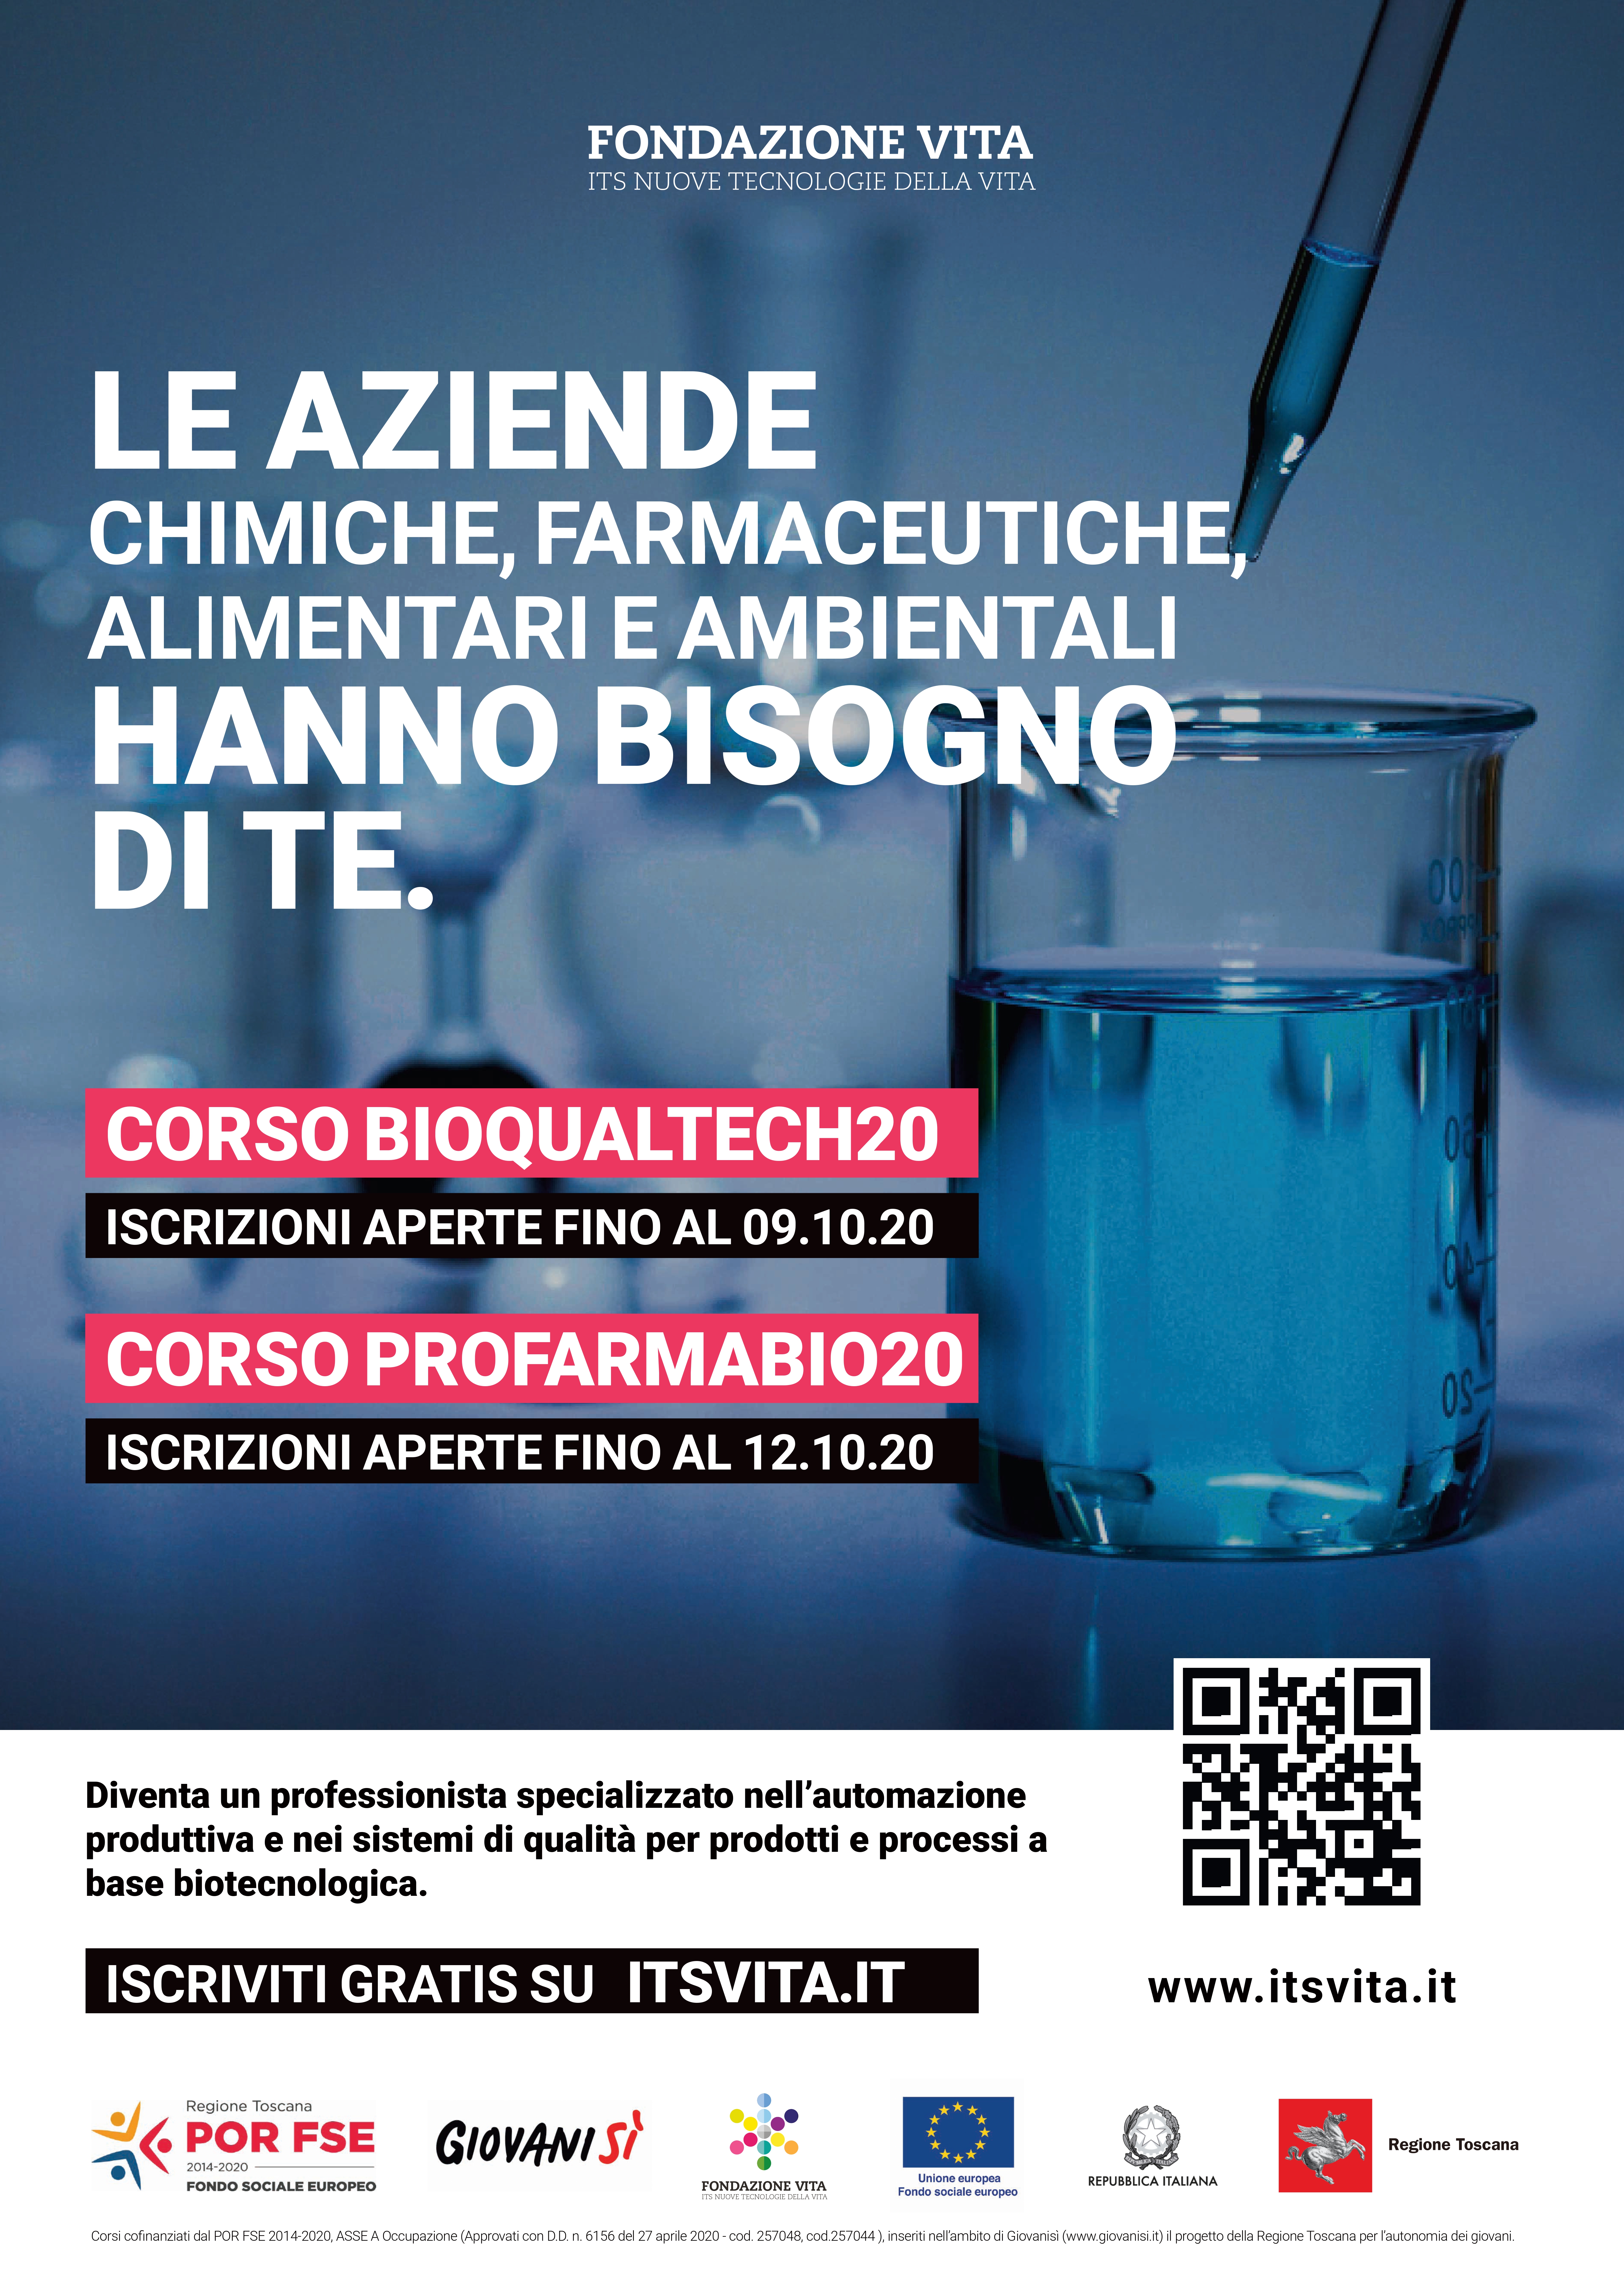 corso ITS Pontedera  PROFARMABIO20 "Tecnico superiore per l’automazione dei processi produttivi nel settore farmaceutico e biotecnologico".